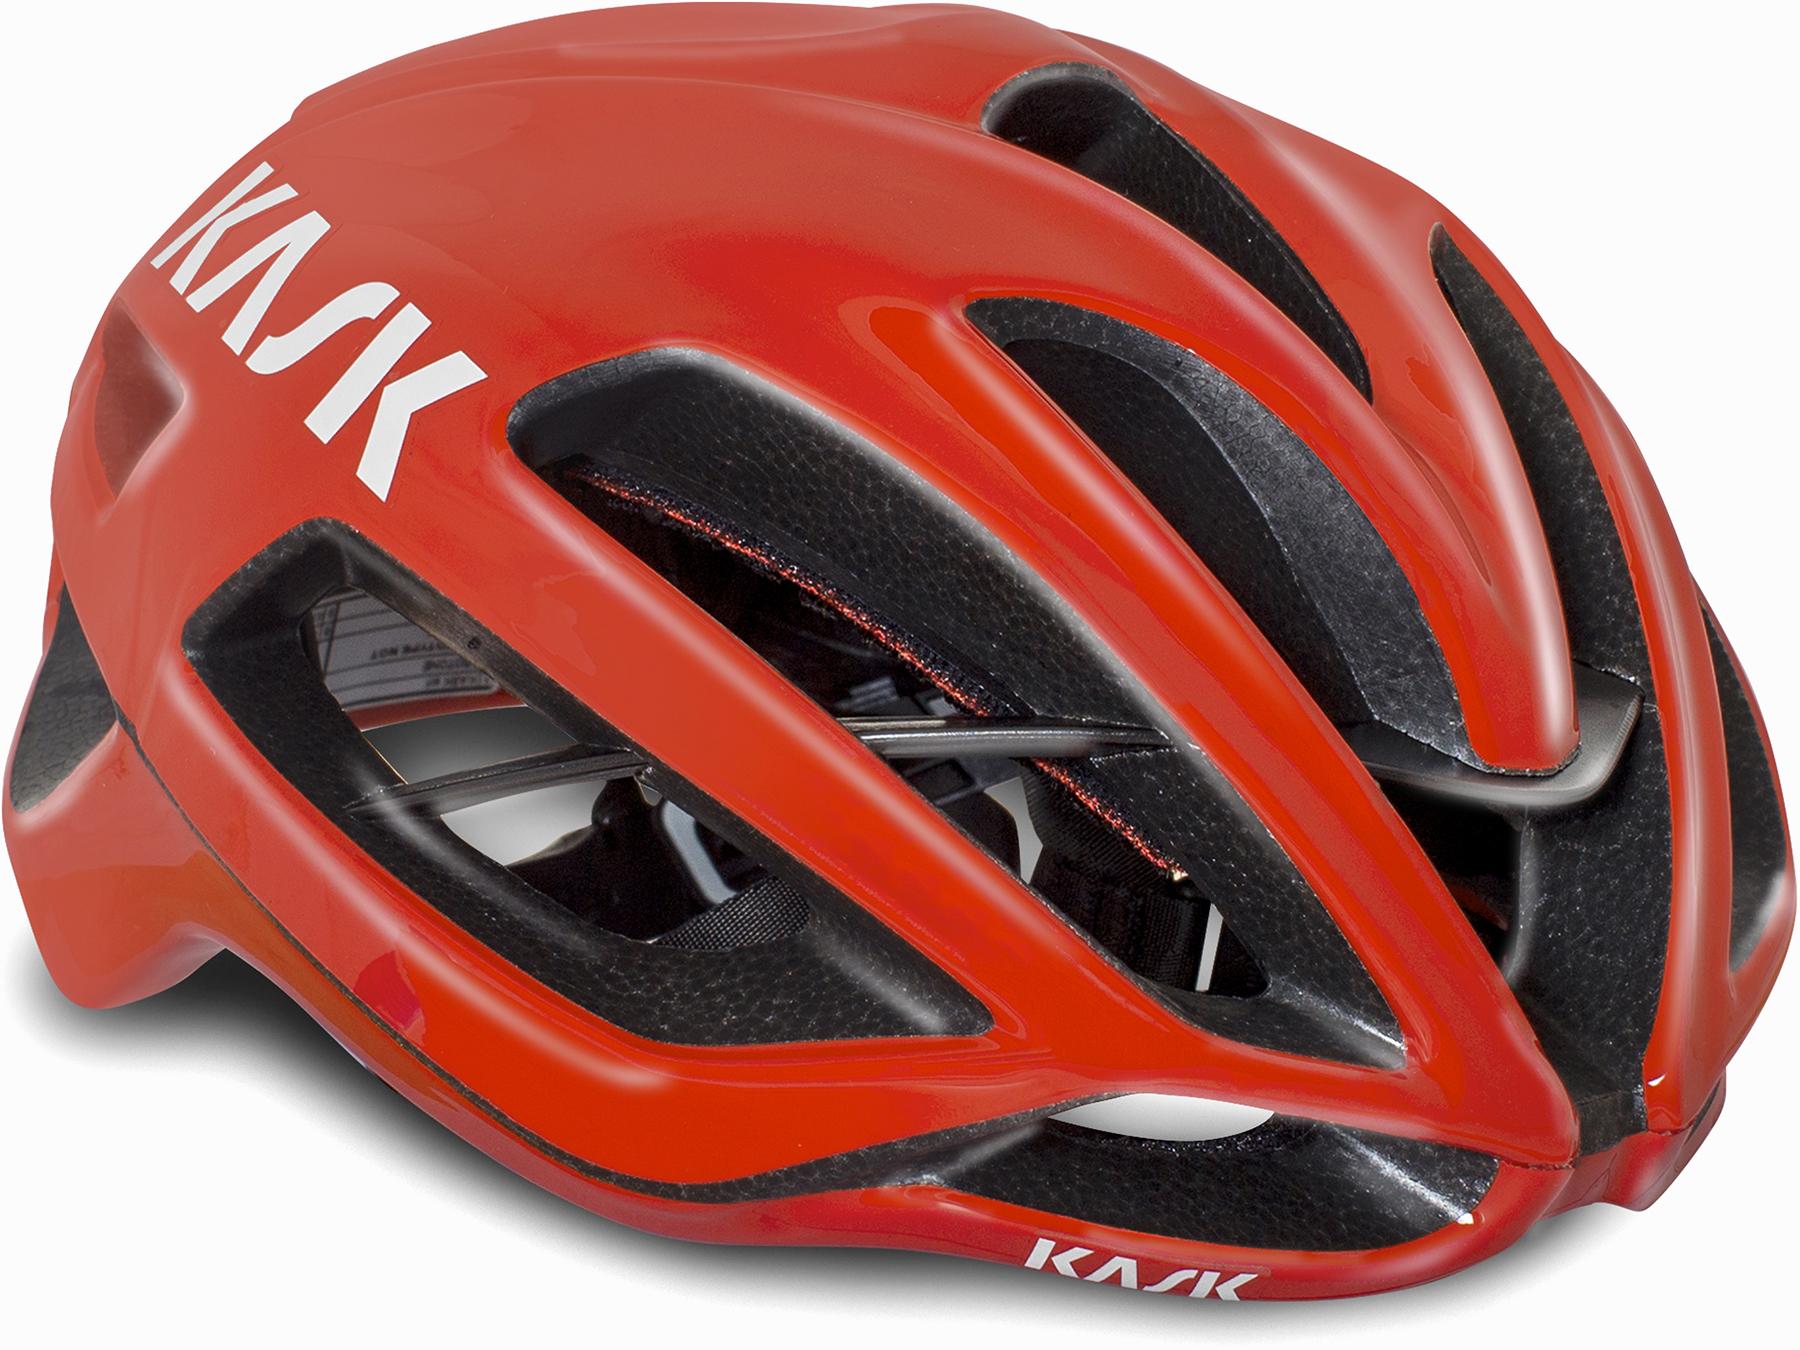 Kask Protone Road Helmet (wg11) - Red